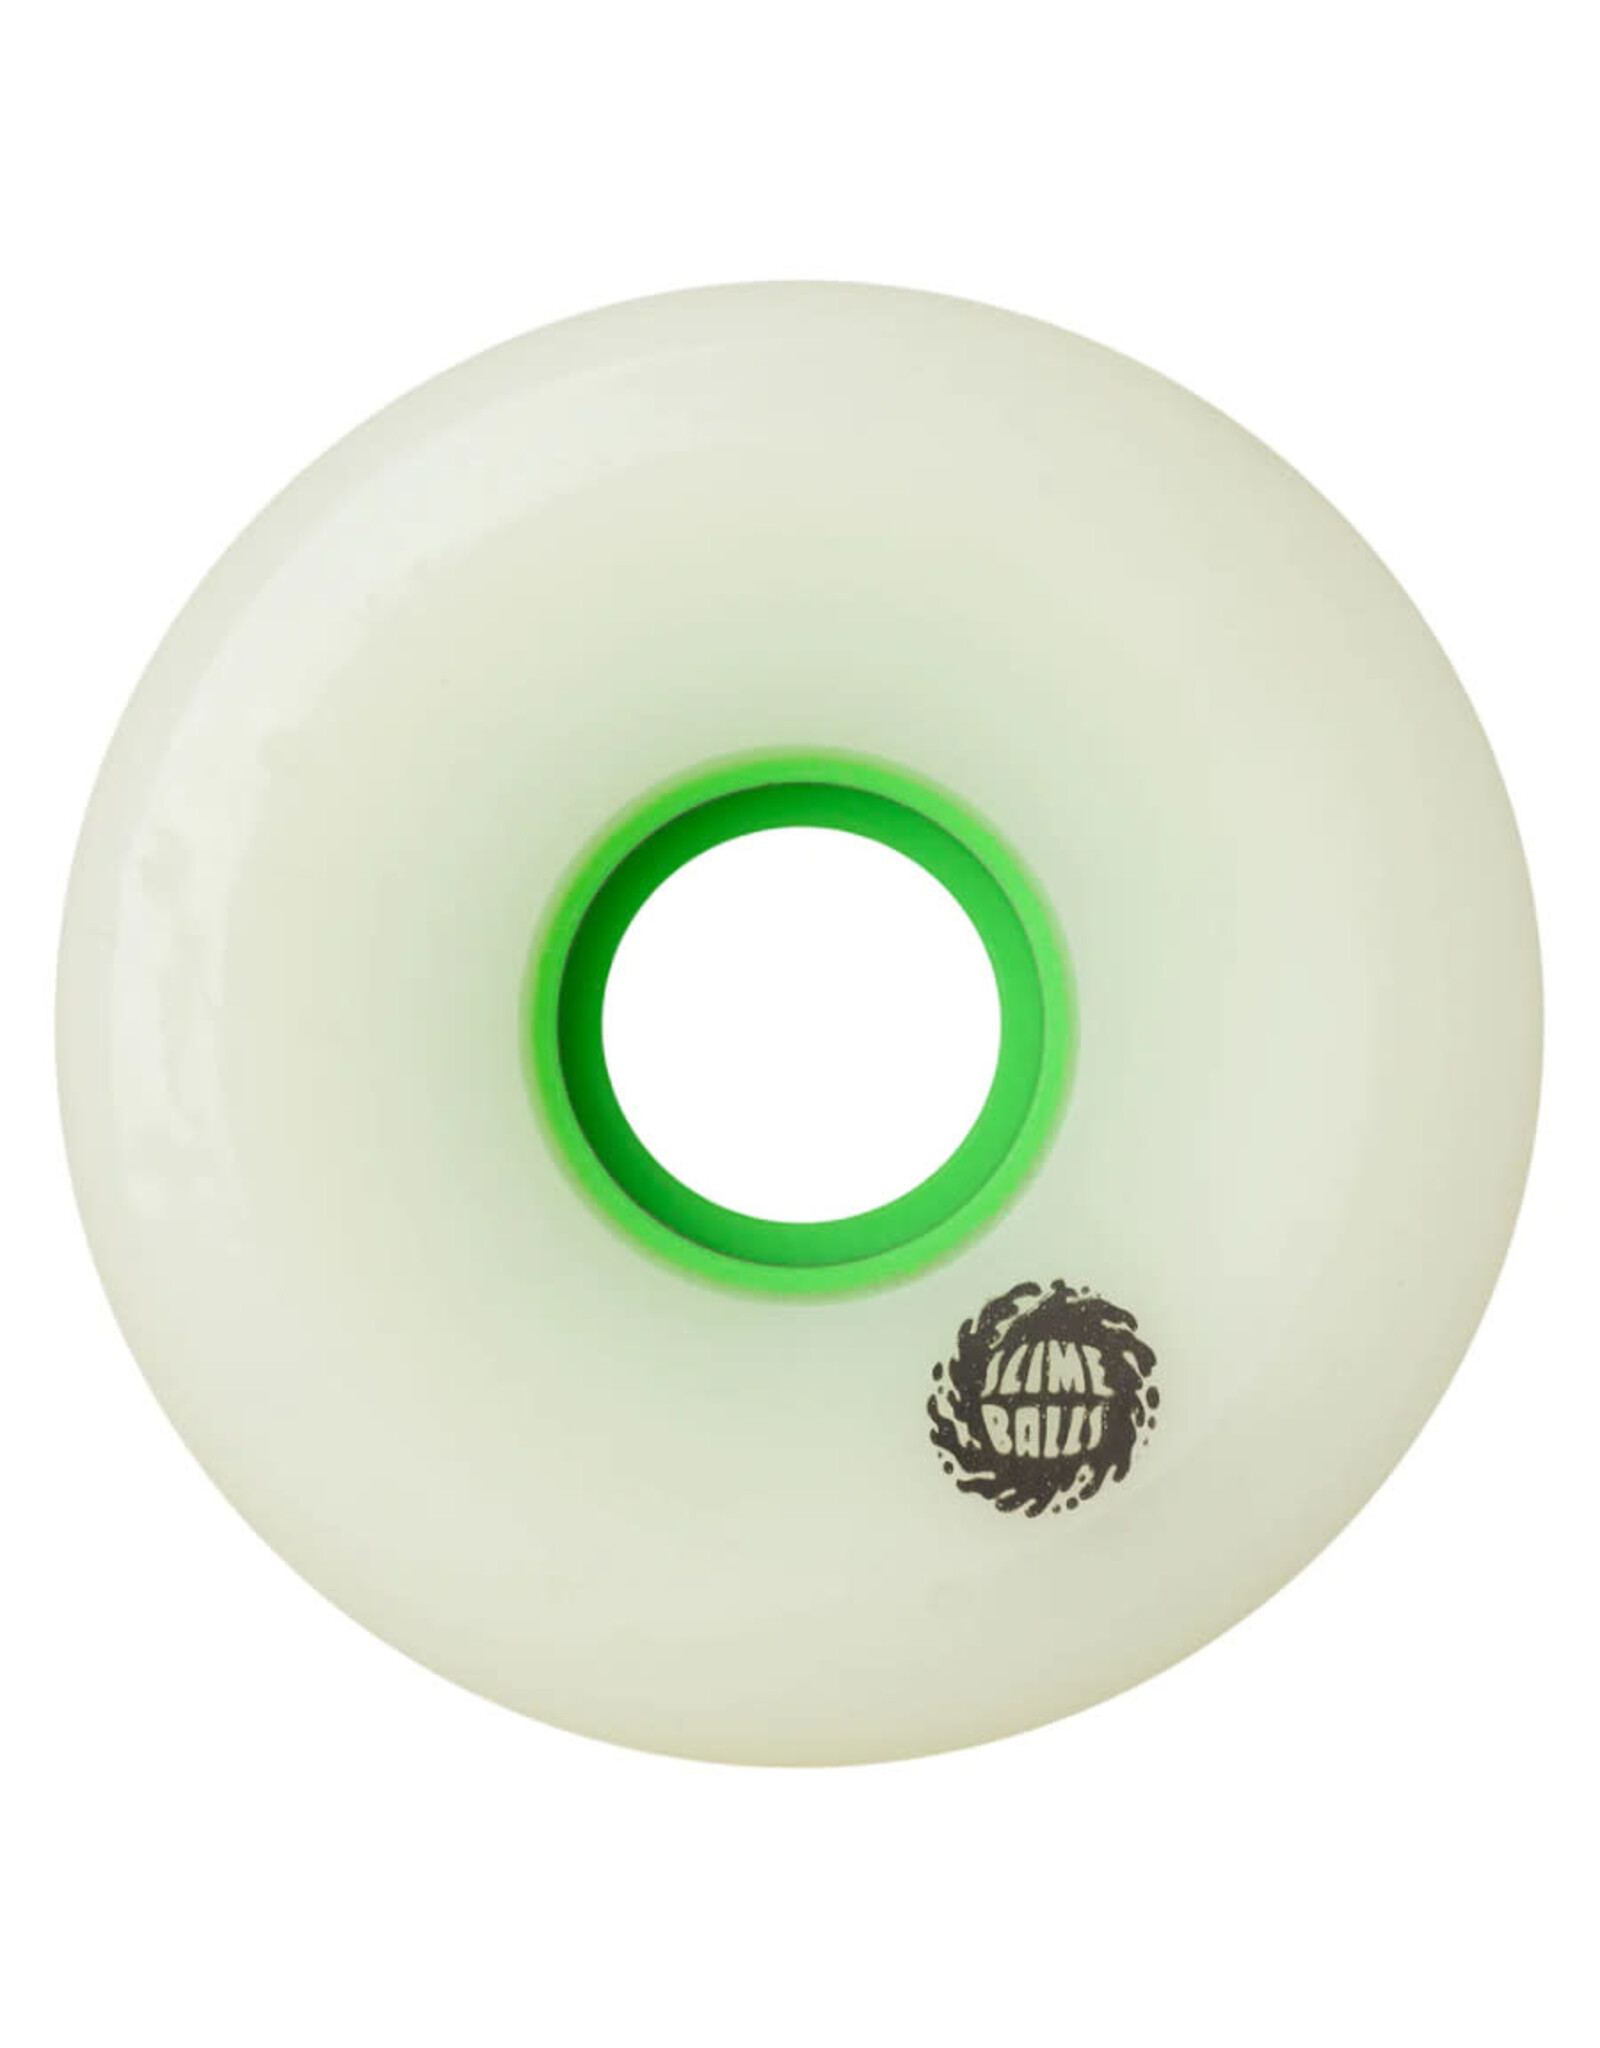 Slime Balls Slime Balls Wheels OG Slime White (66mm/78a)